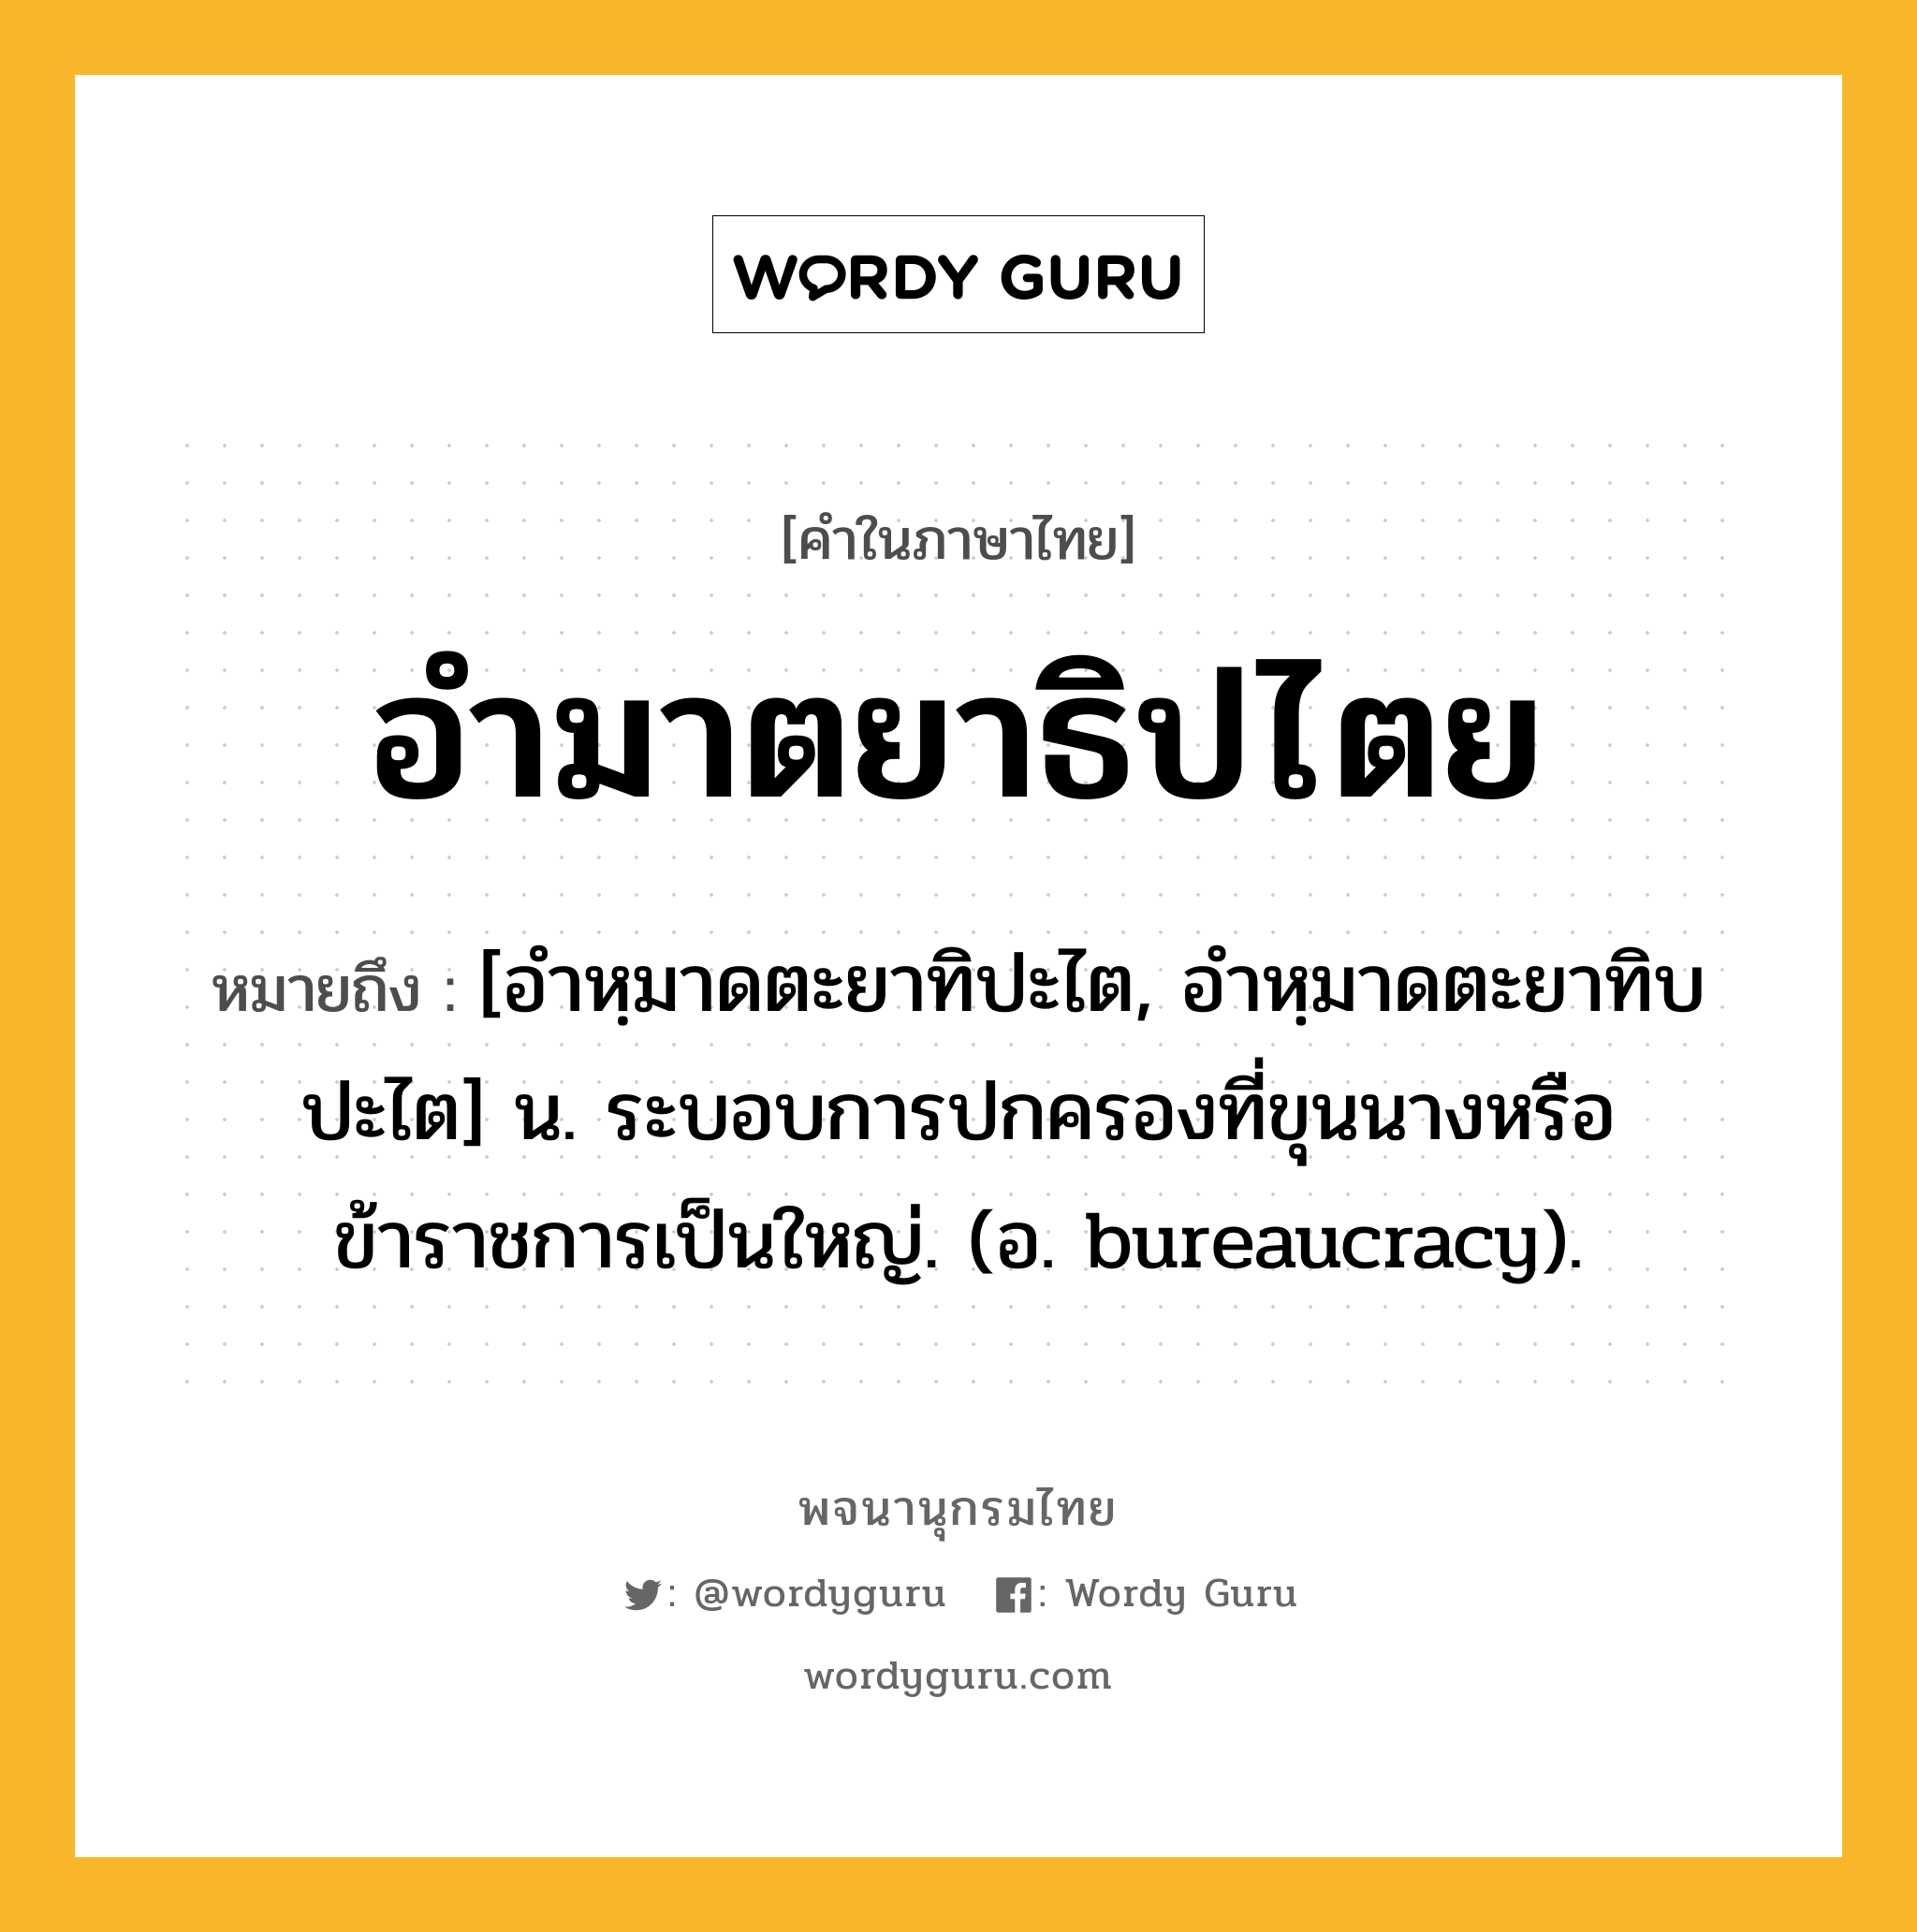 อำมาตยาธิปไตย หมายถึงอะไร?, คำในภาษาไทย อำมาตยาธิปไตย หมายถึง [อำหฺมาดตะยาทิปะไต, อำหฺมาดตะยาทิบปะไต] น. ระบอบการปกครองที่ขุนนางหรือข้าราชการเป็นใหญ่. (อ. bureaucracy).